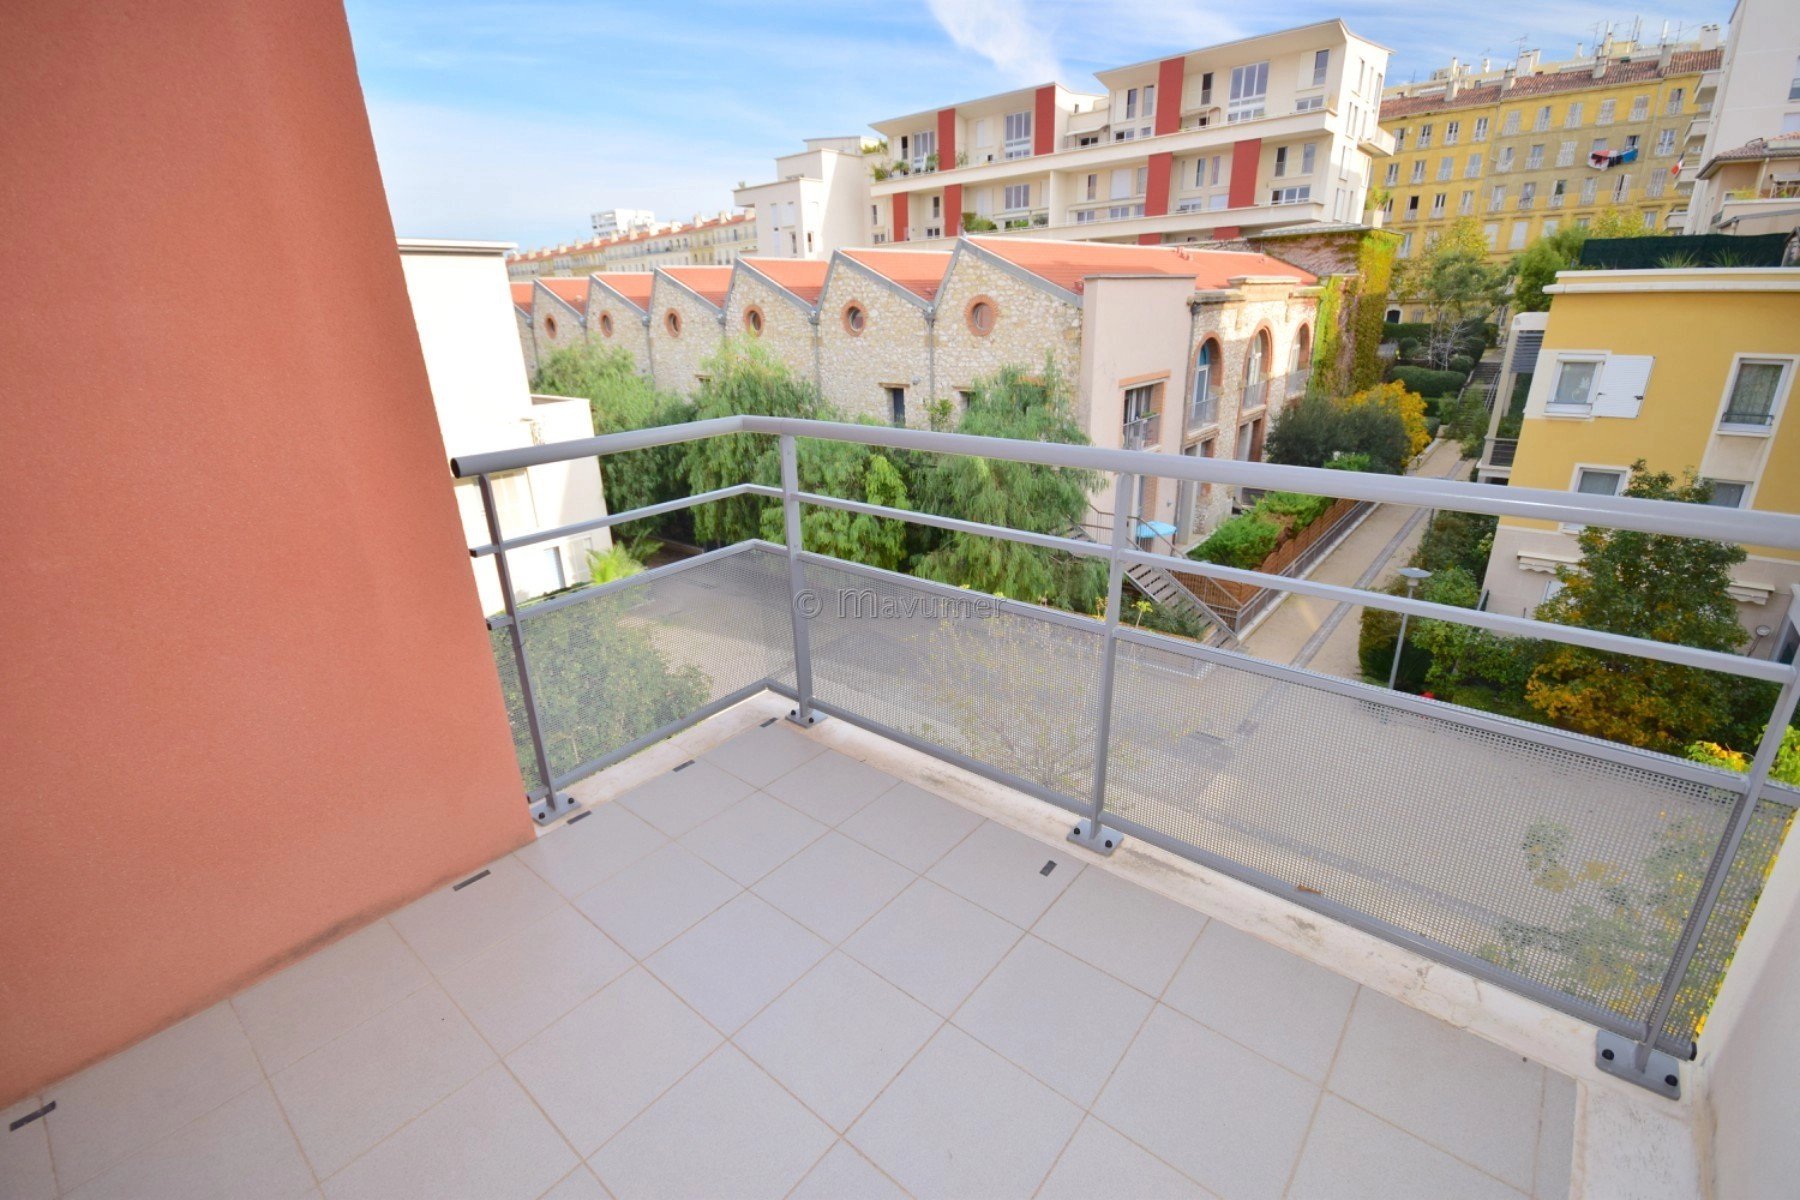 Sale Apartment - Marseille 2ème